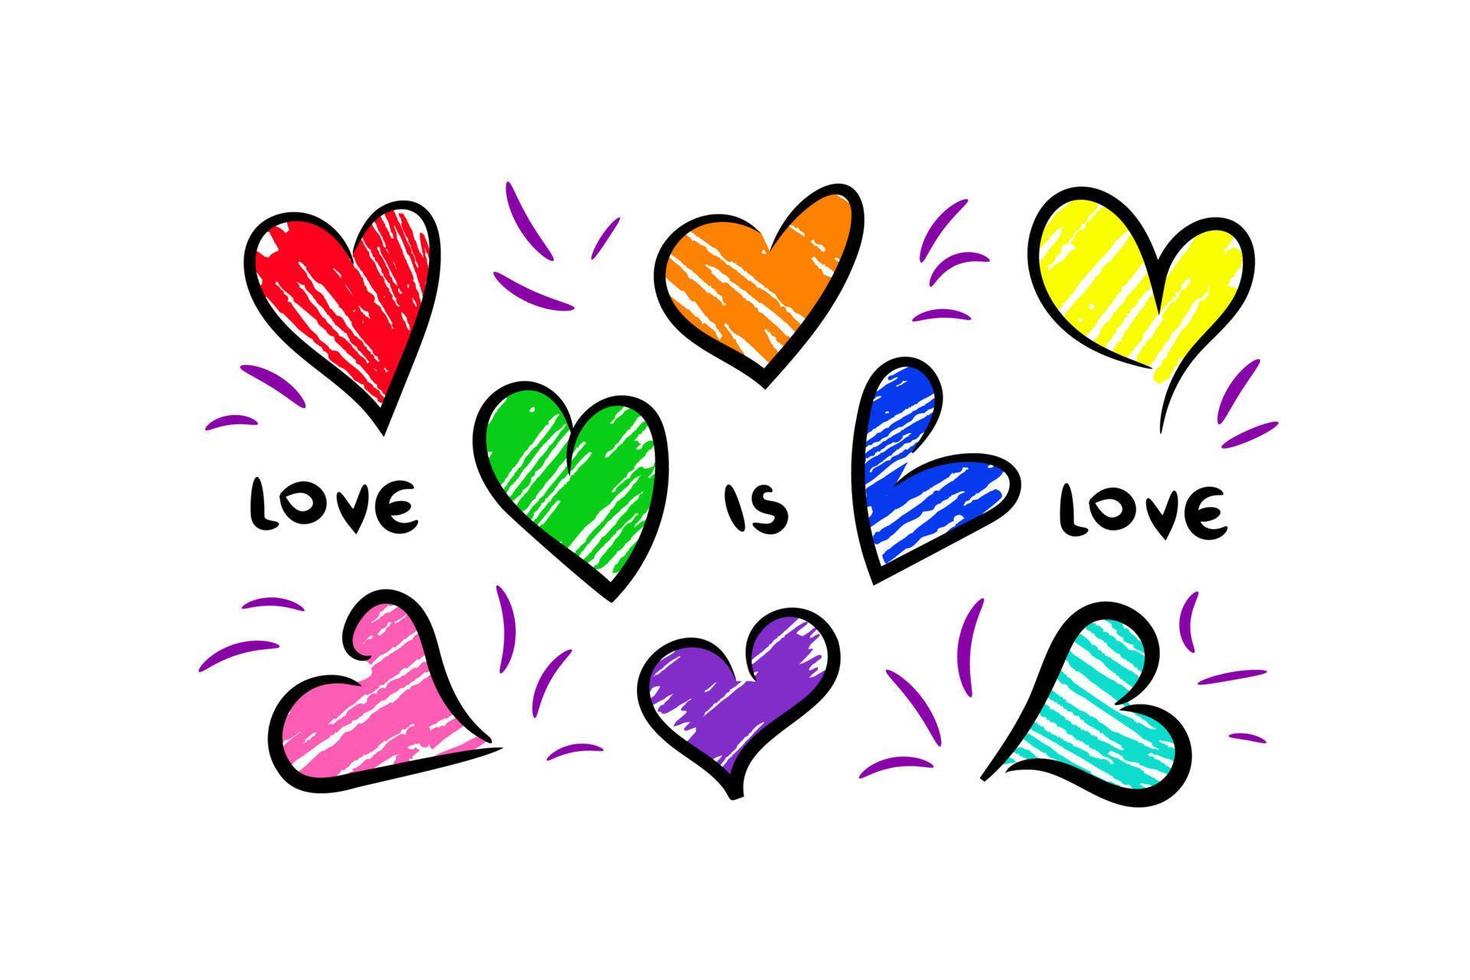 oito corações esboçados coloridos por marcador ou caneta hidrográfica em várias cores do arco-íris, além de rosa e azul claro, slogan amor é amor. cores de orgulho da comunidade lgbtqa, cartão de dia dos namorados, cartaz, adesivo etc. vetor